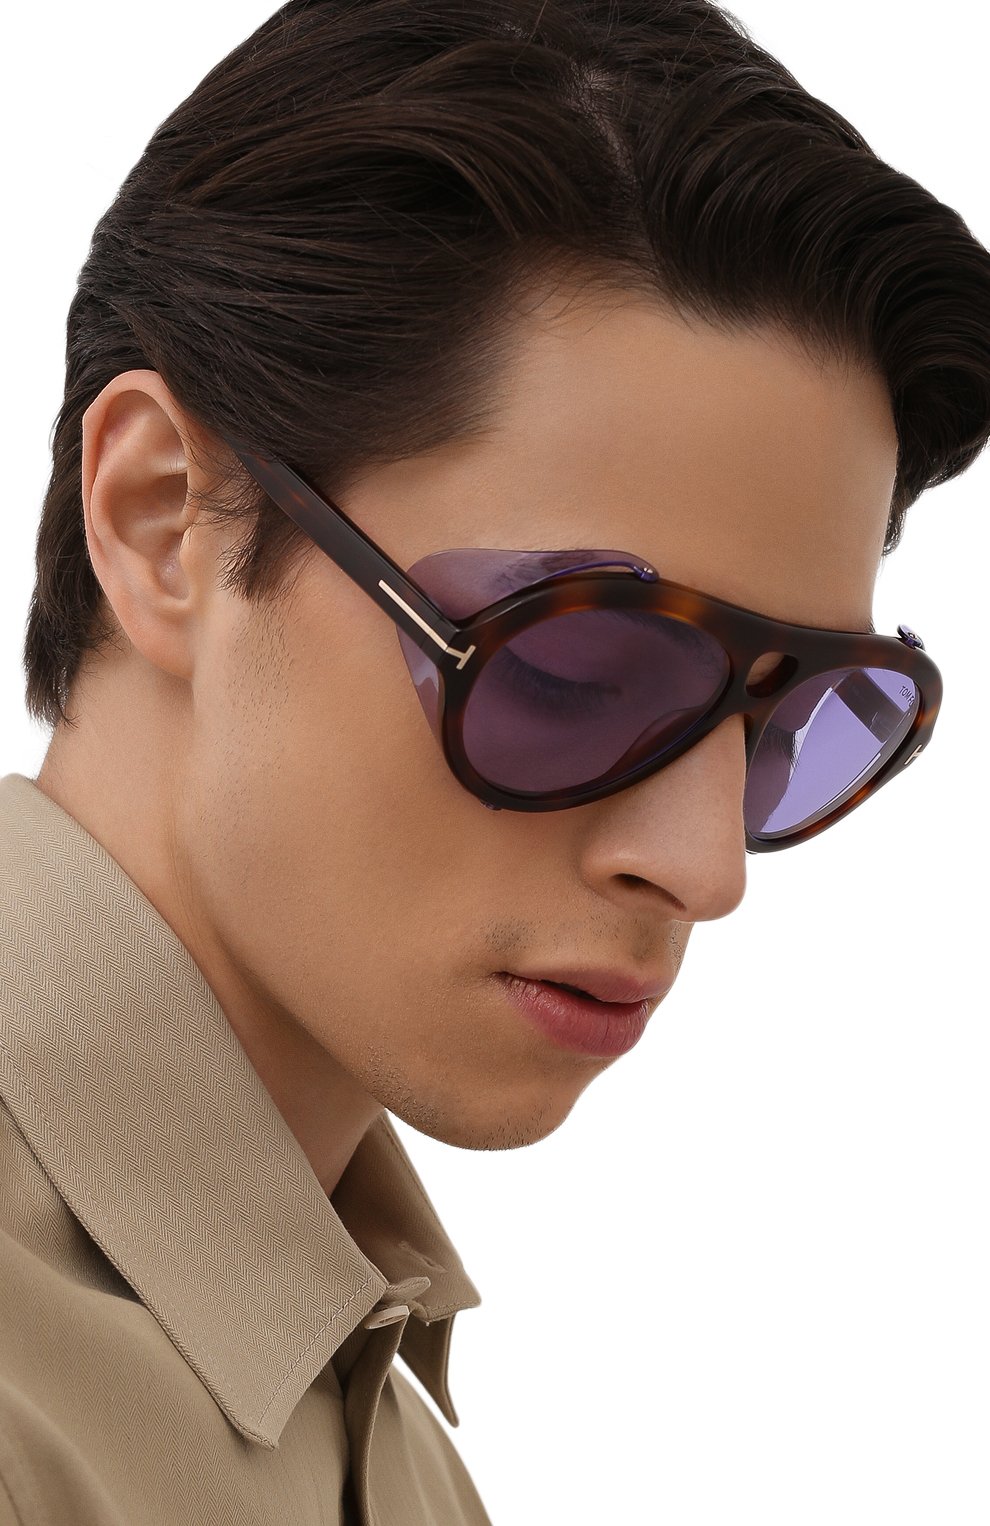 Женские солнцезащитные очки TOM FORD коричневого цвета, арт. TF882 53Y | Фото 3 (Тип очков: С/з; Очки форма: Авиаторы; Оптика Гендер: оптика-унисекс)